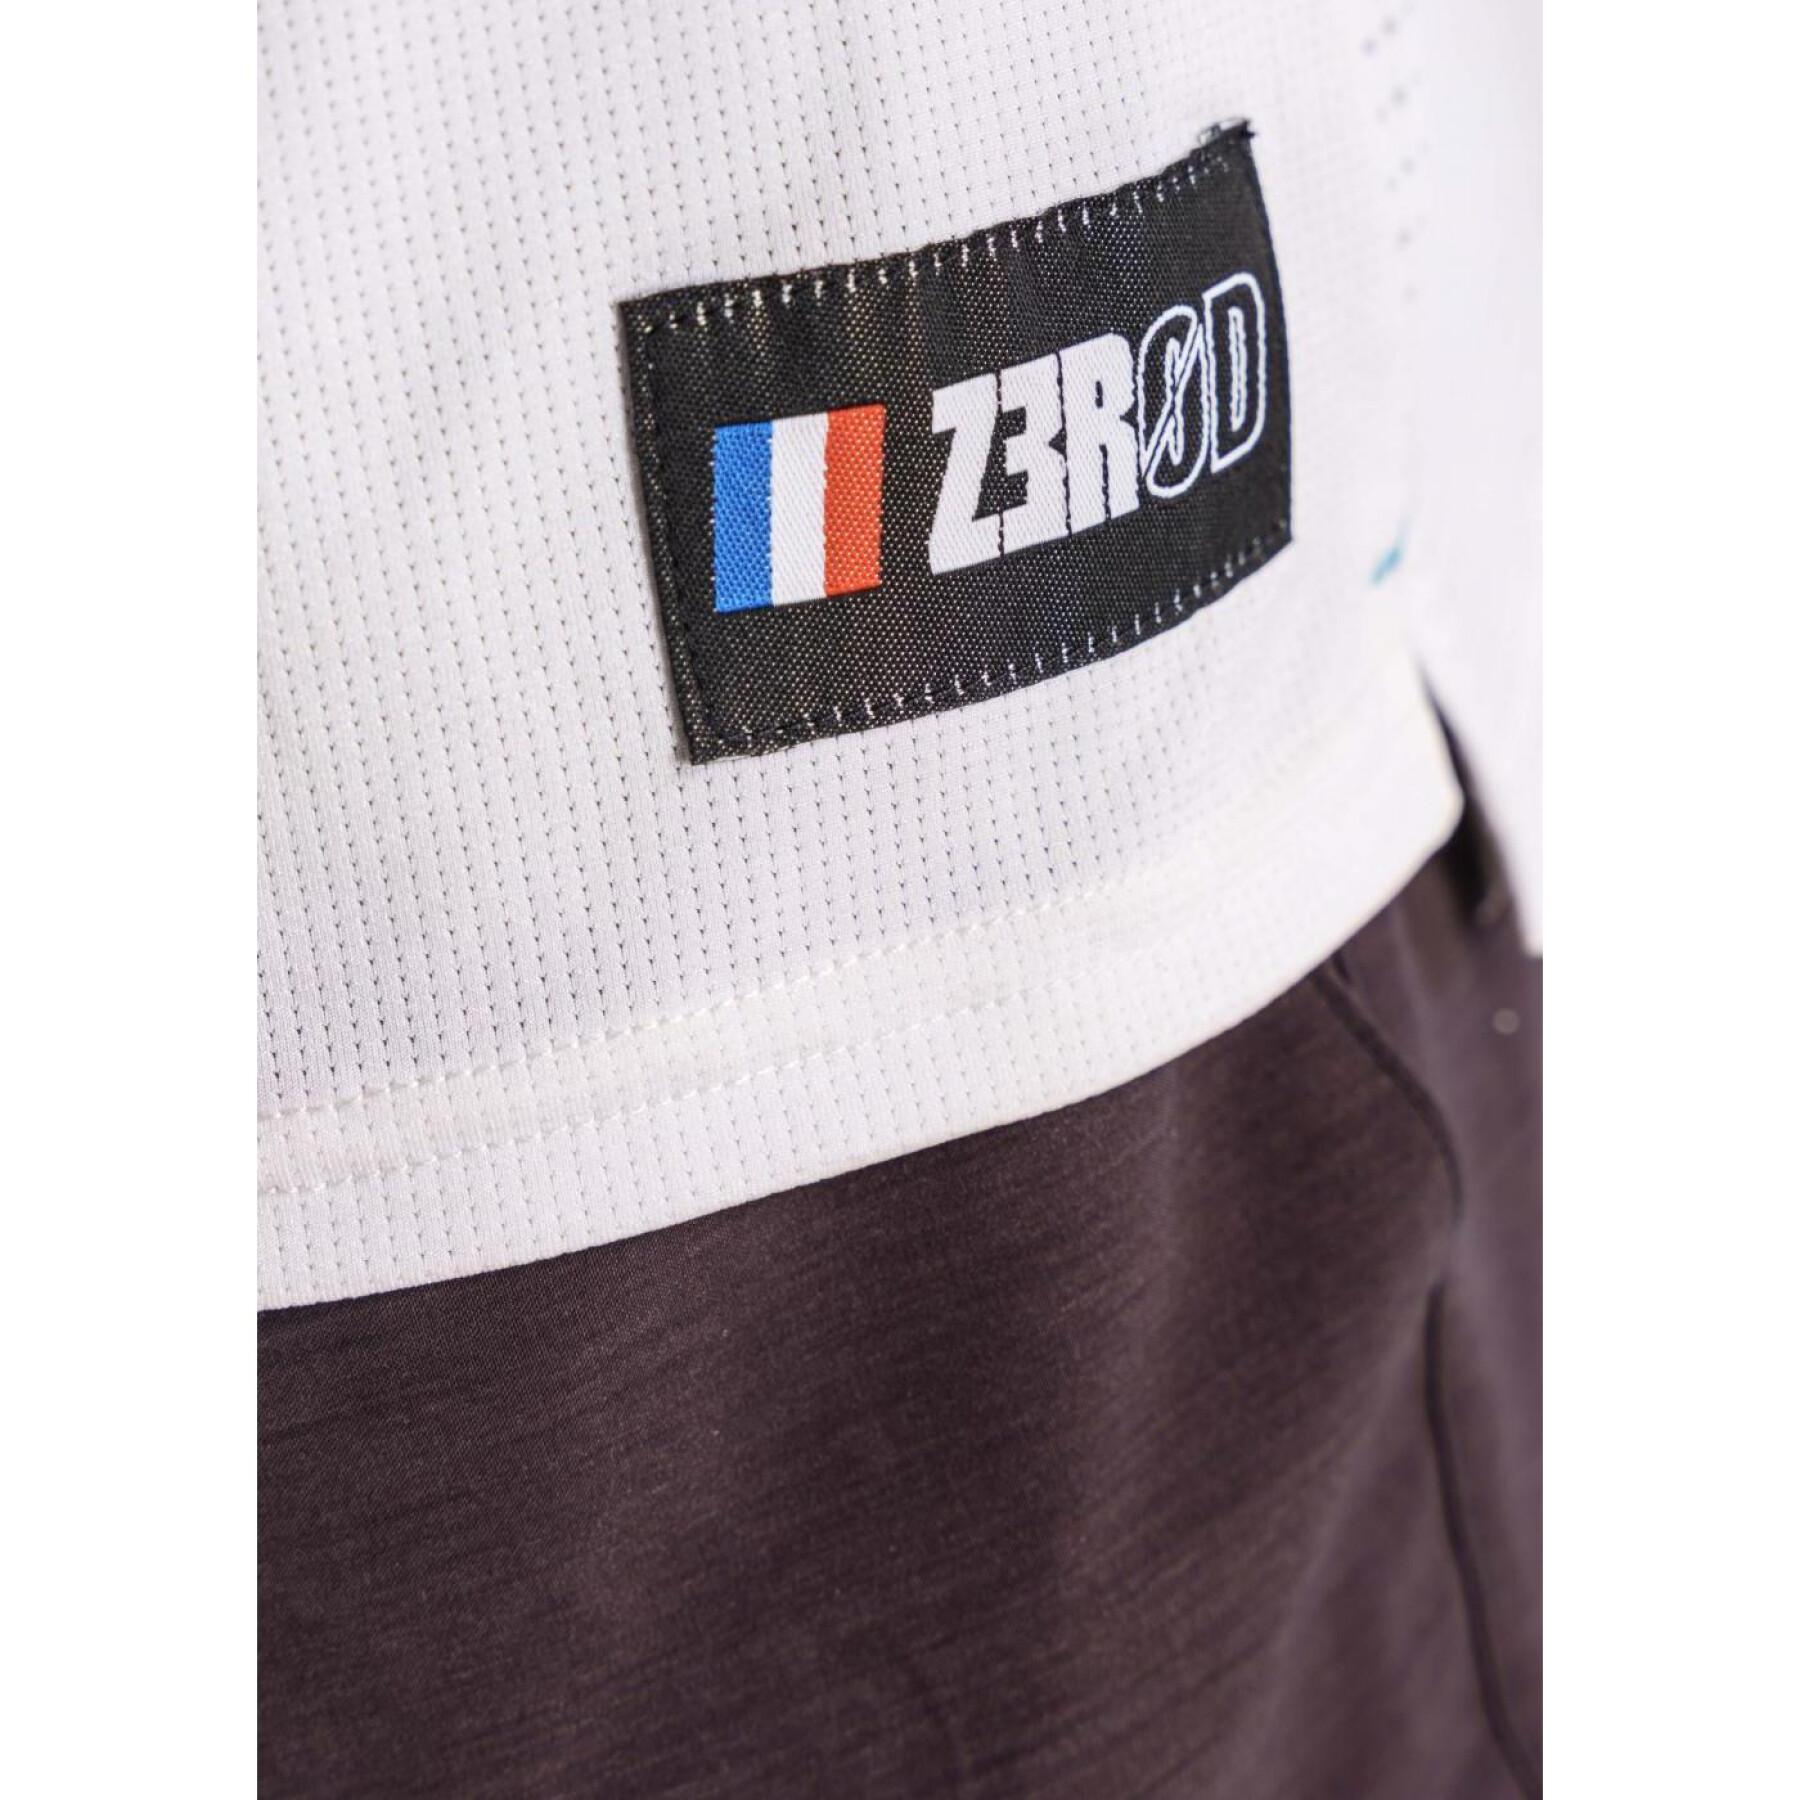 T-shirt Z3R0D Duotech